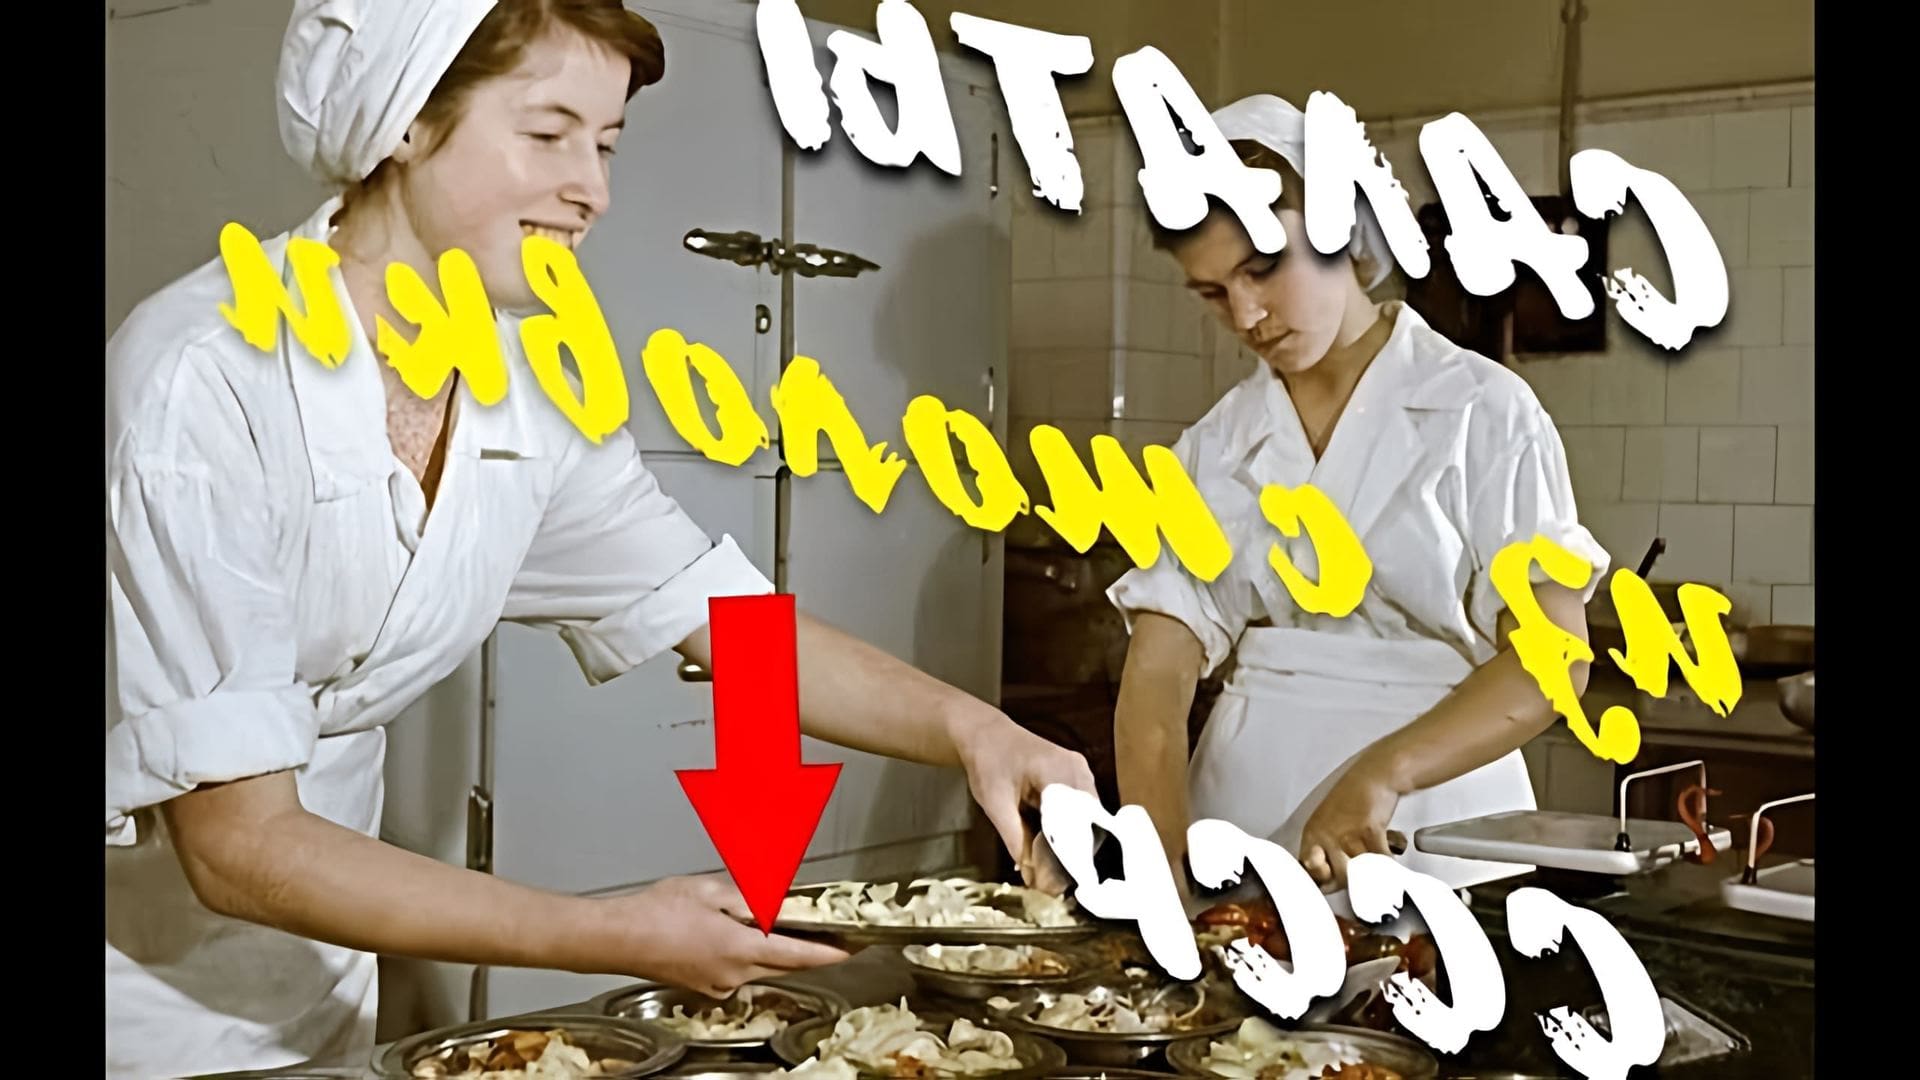 Видео рассматривает 7 рецептов салатов, которые были популярны в Советском Союзе из-за их низкой стоимости и использования базовых ингредиентов